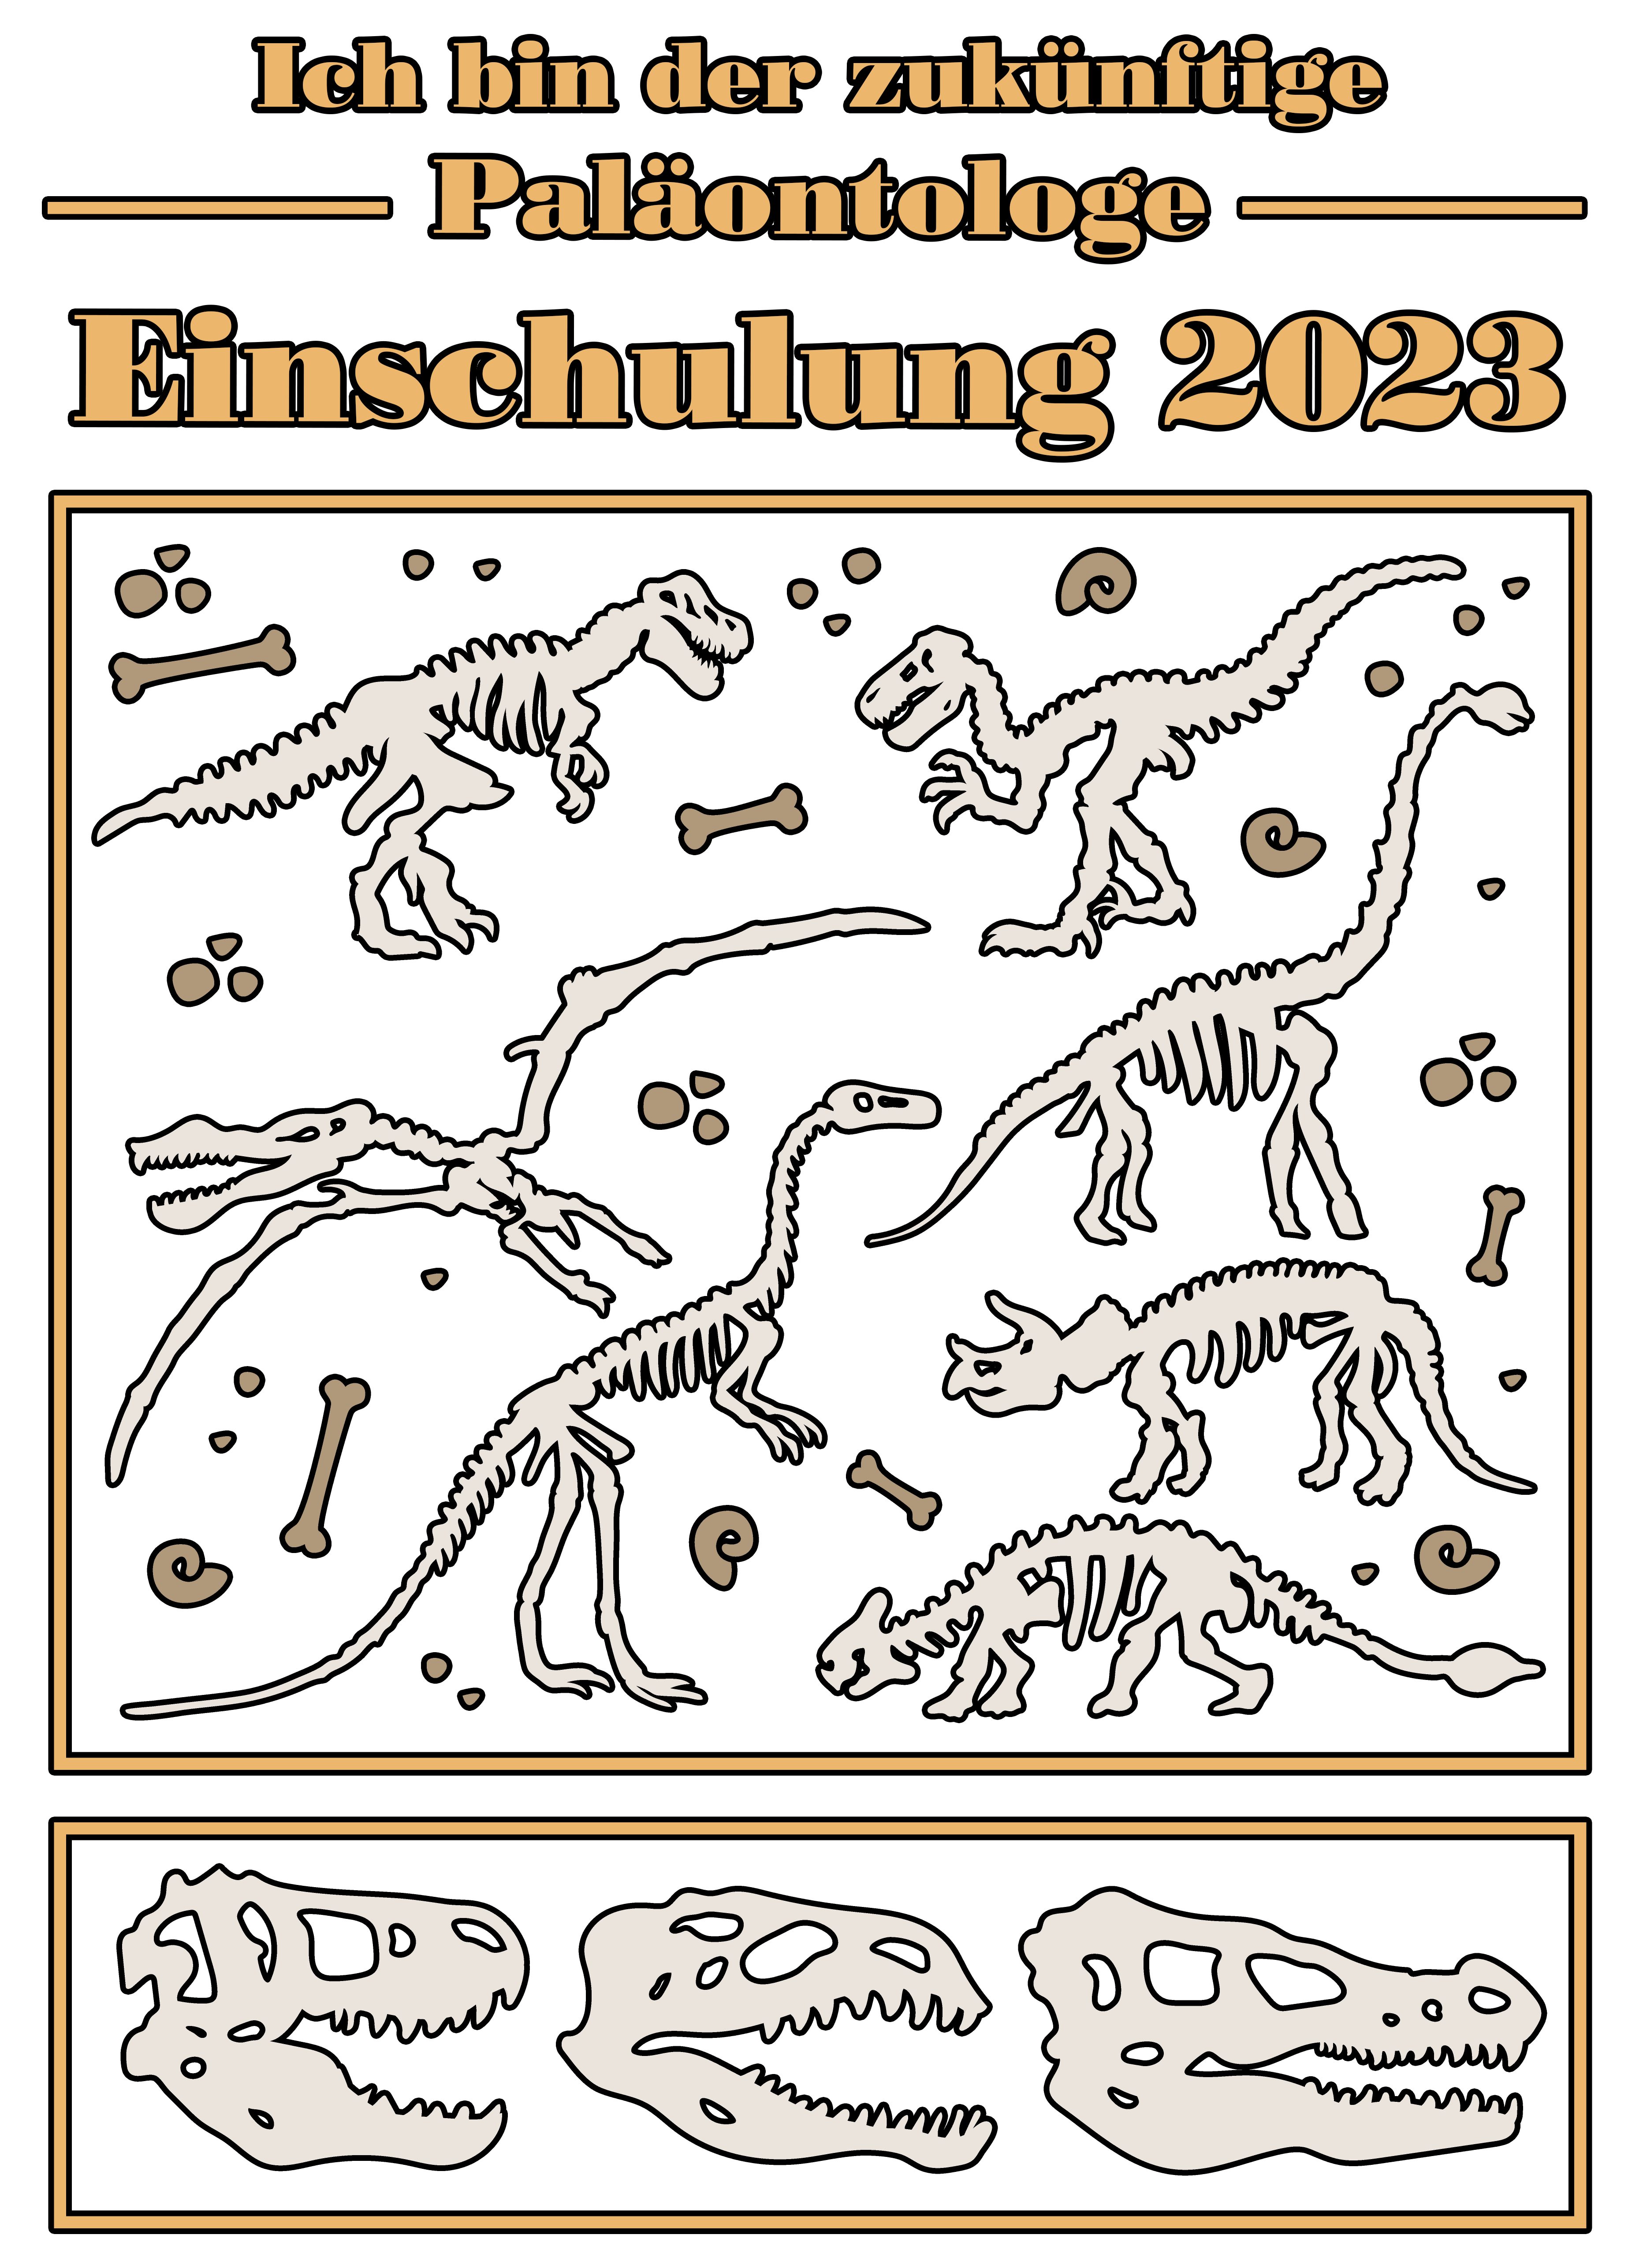 schwarz, 2023, Kinder Dino Baumwollshirt MyDesign24 zukünftige Paläontologe bedrucktes rot, i36 blau, T-Shirt Einschulung Skeletten Print-Shirt weiß, mit